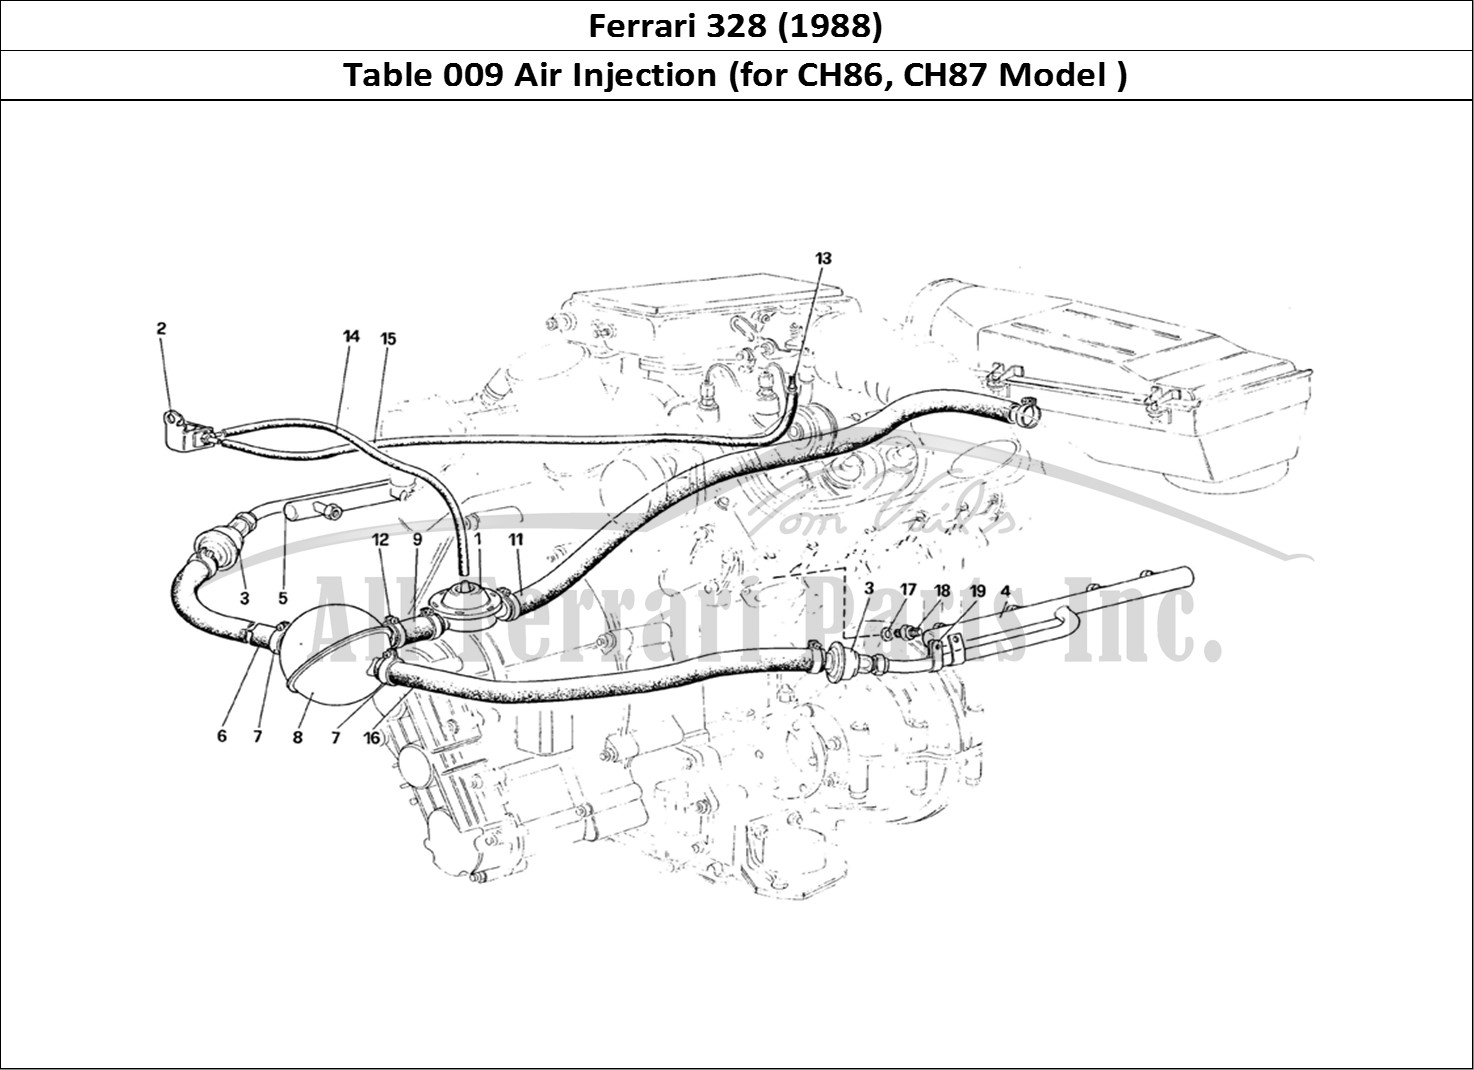 Ferrari Parts Ferrari 328 (1988) Page 009 Air Injection (for CH86 a